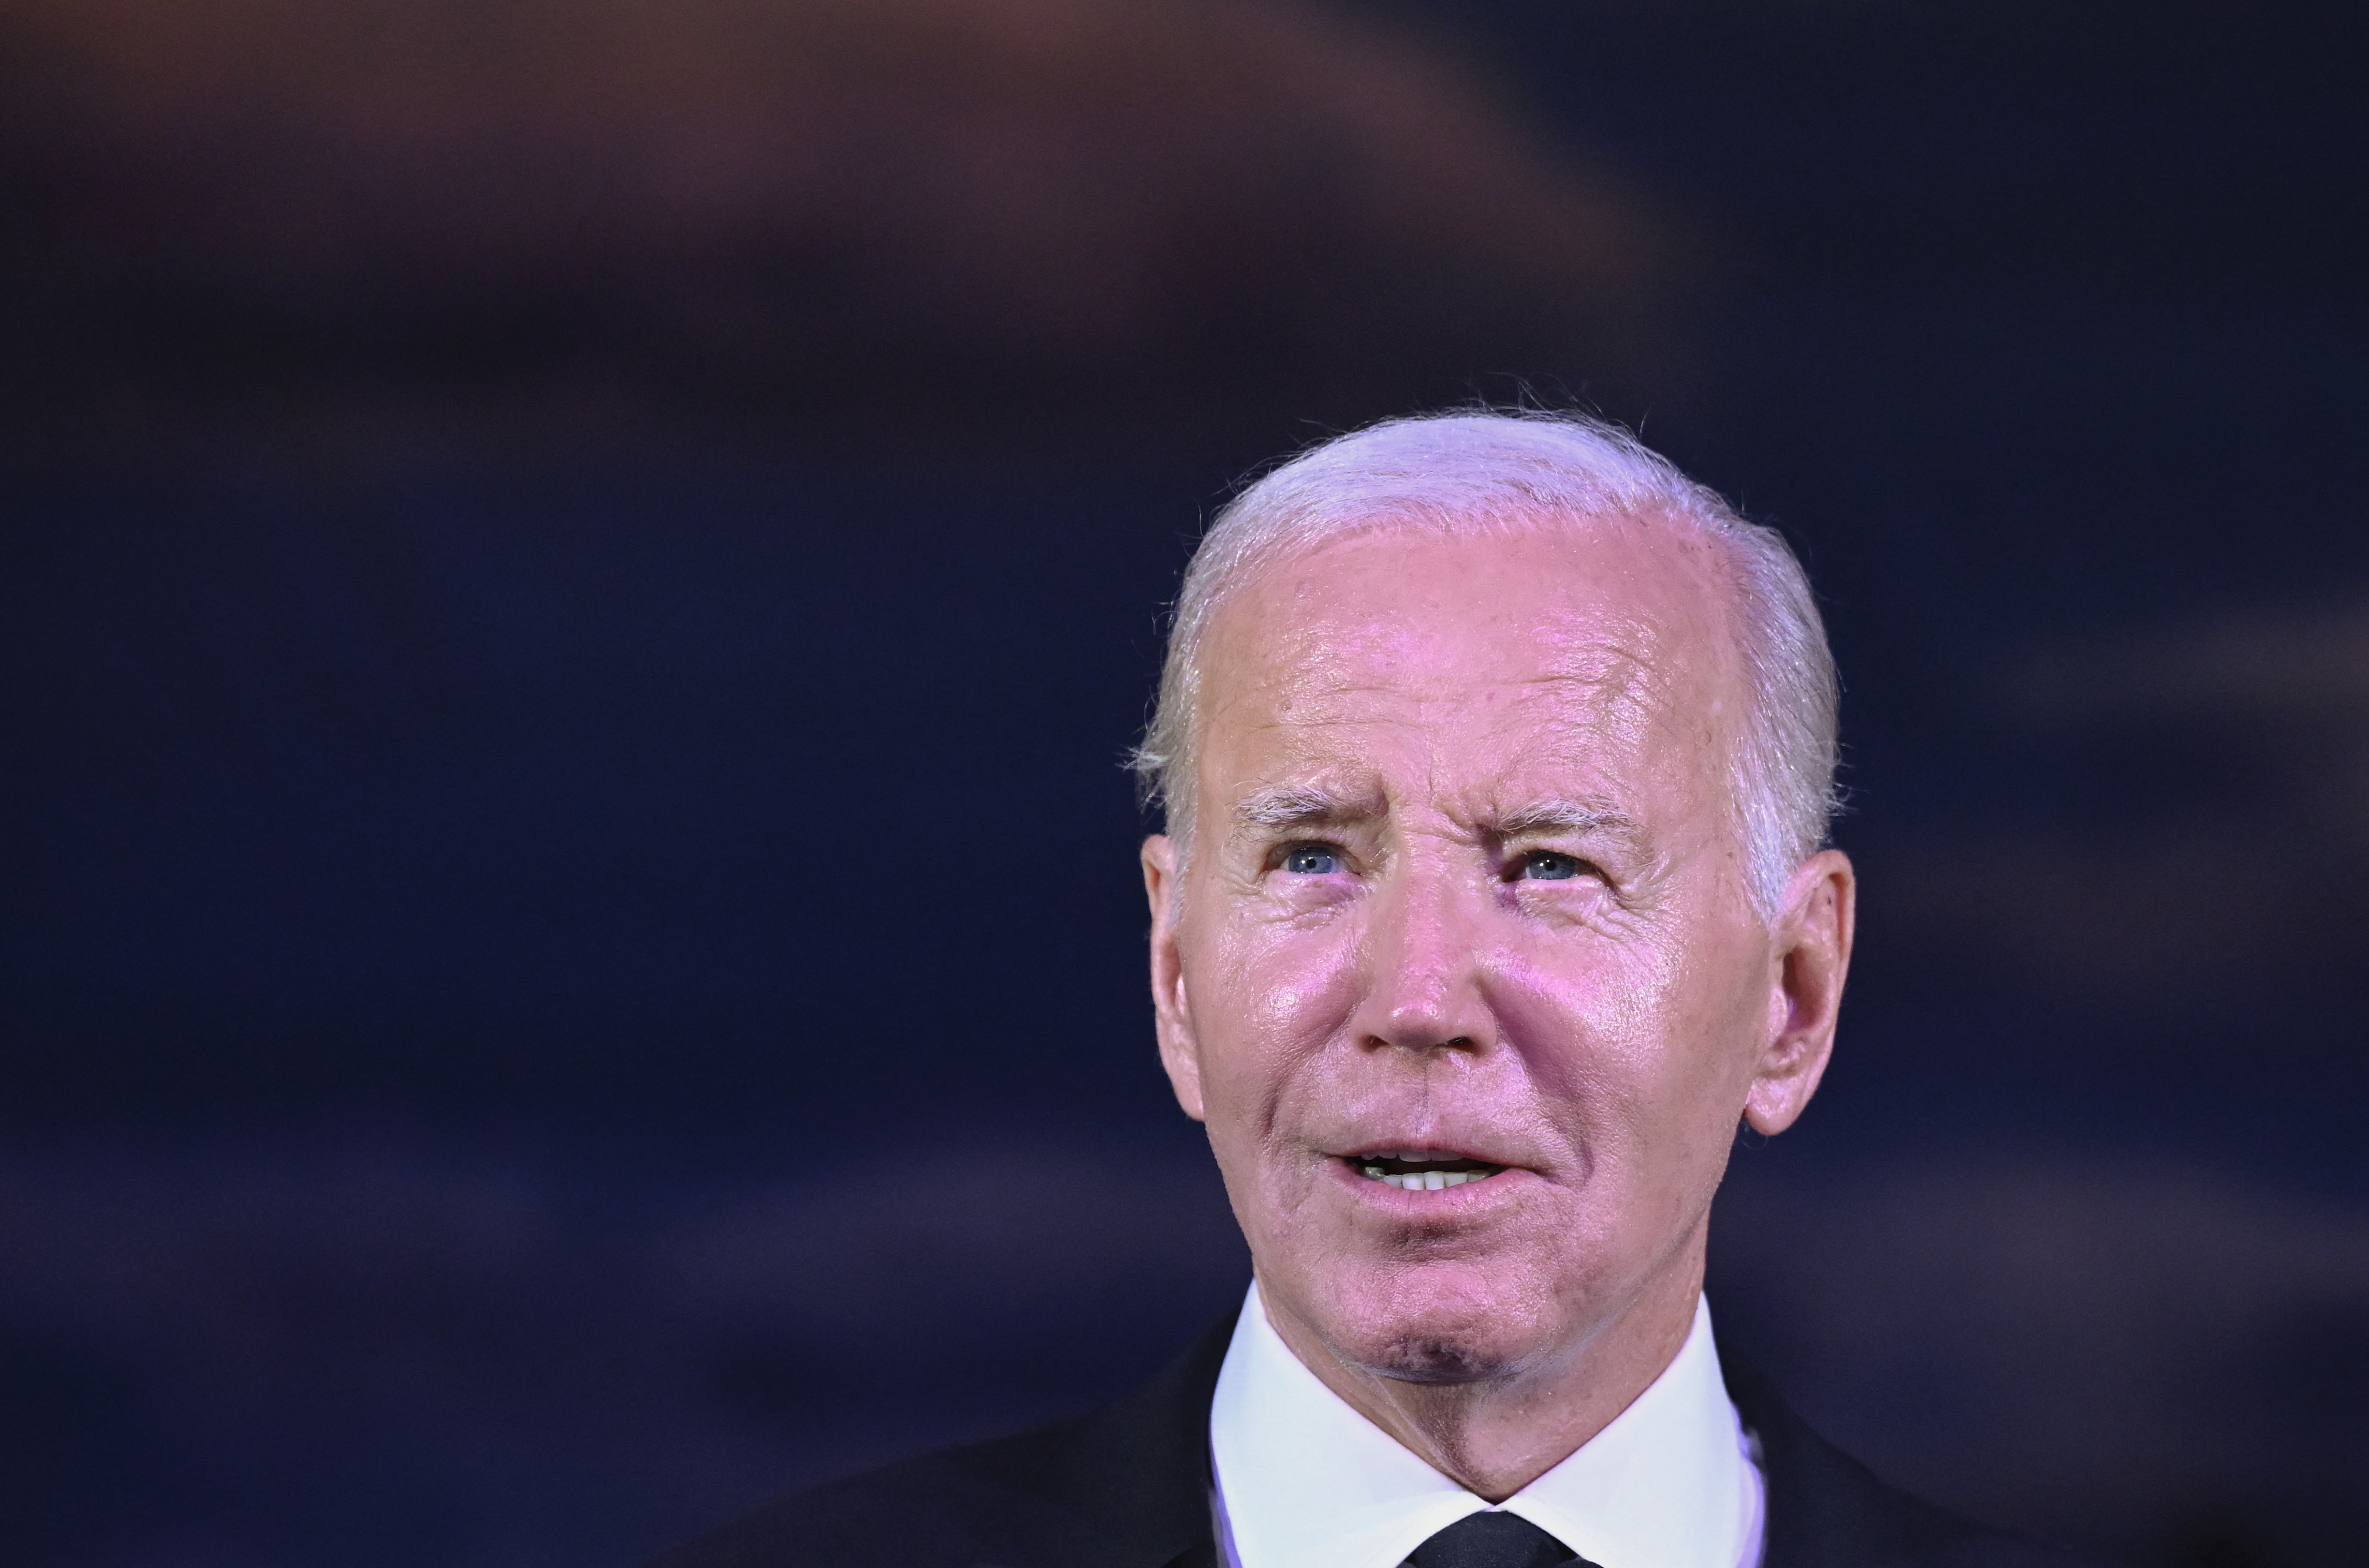 De qué forma trabajará Biden con Israel para evitar “más tragedias” de civiles